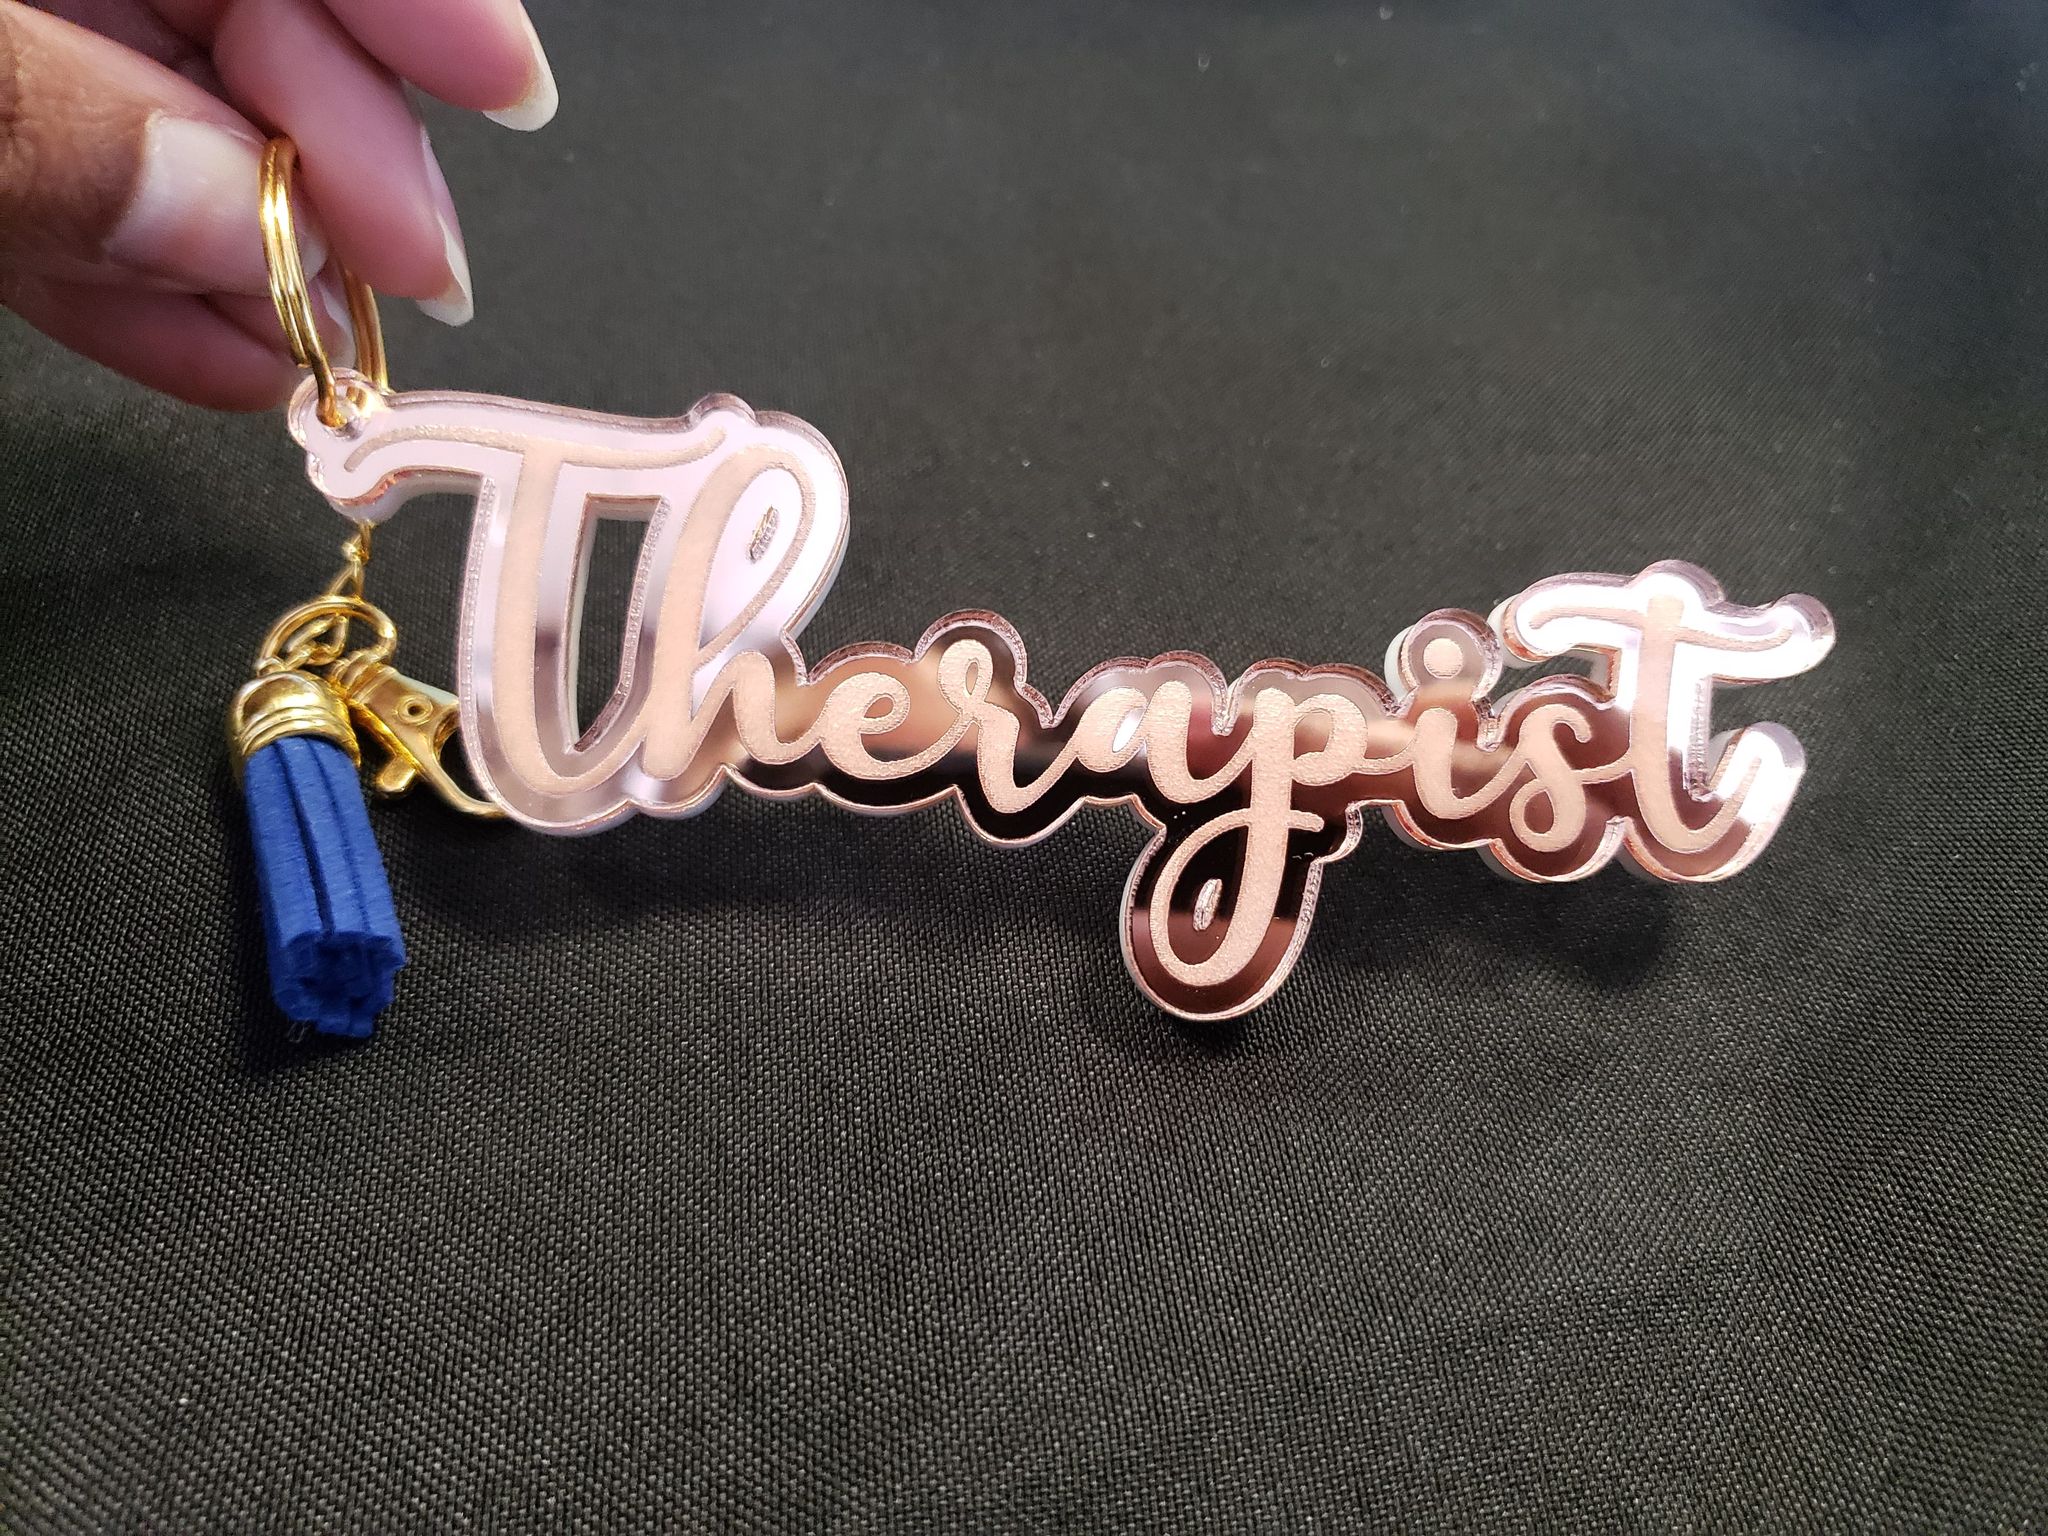 Therapist keychain